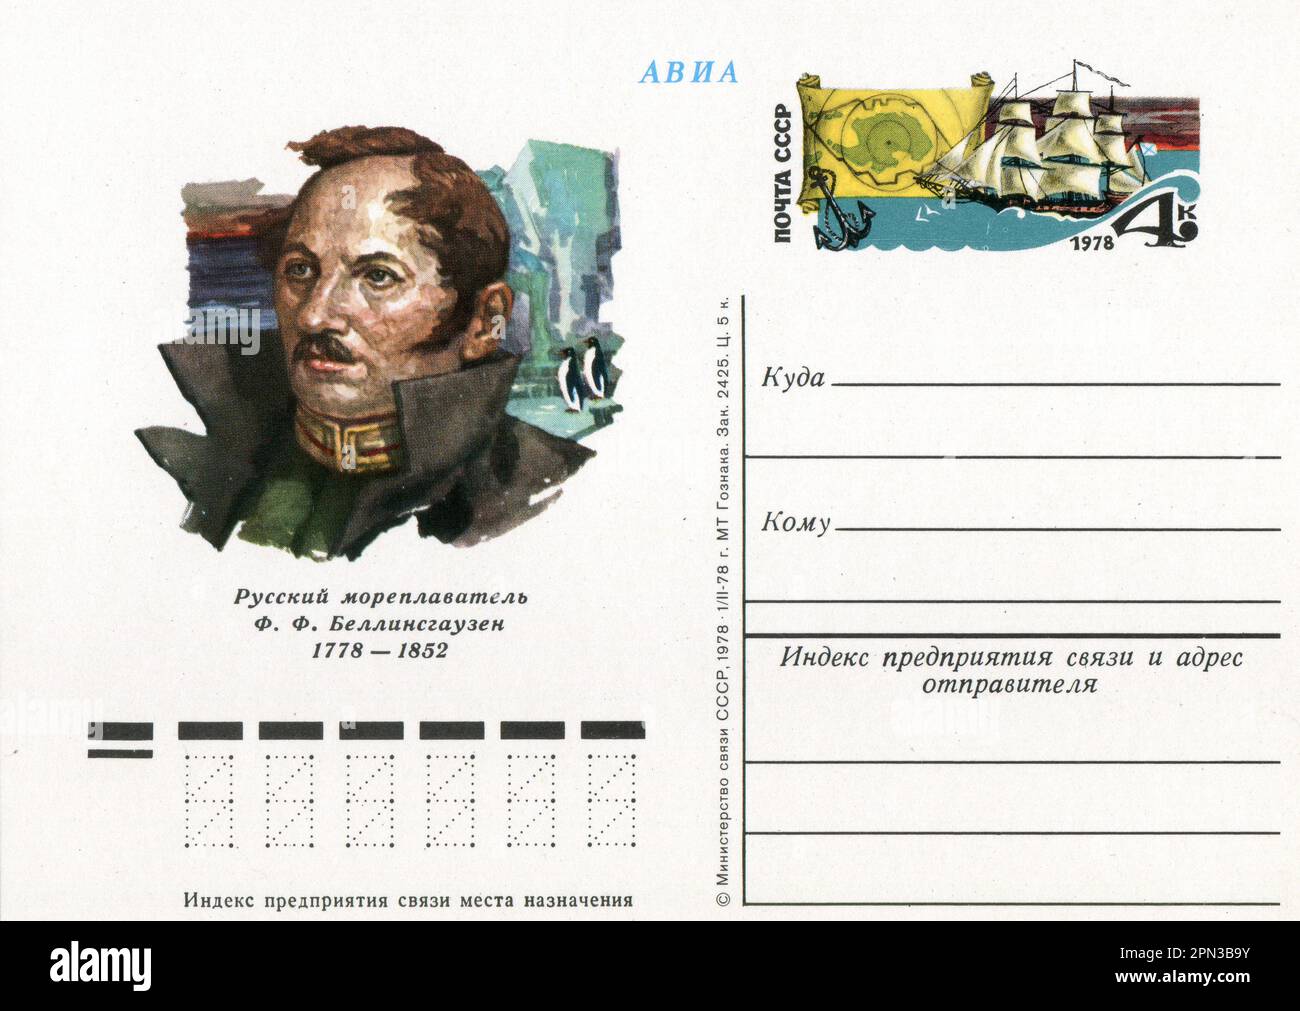 Fabian Gottlieb Thaddeus von Bellingshausen (20. September [O.S. 9. September] 1778 – 25. Januar [O.S. 13. Januar] 1852) war Kartograf, Entdecker und Marineoffizier des Russischen Reiches, der schließlich in den Rang eines Admirals aufstieg. Alte Vintage-Postkarte der UdSSR, 1978. Stockfoto